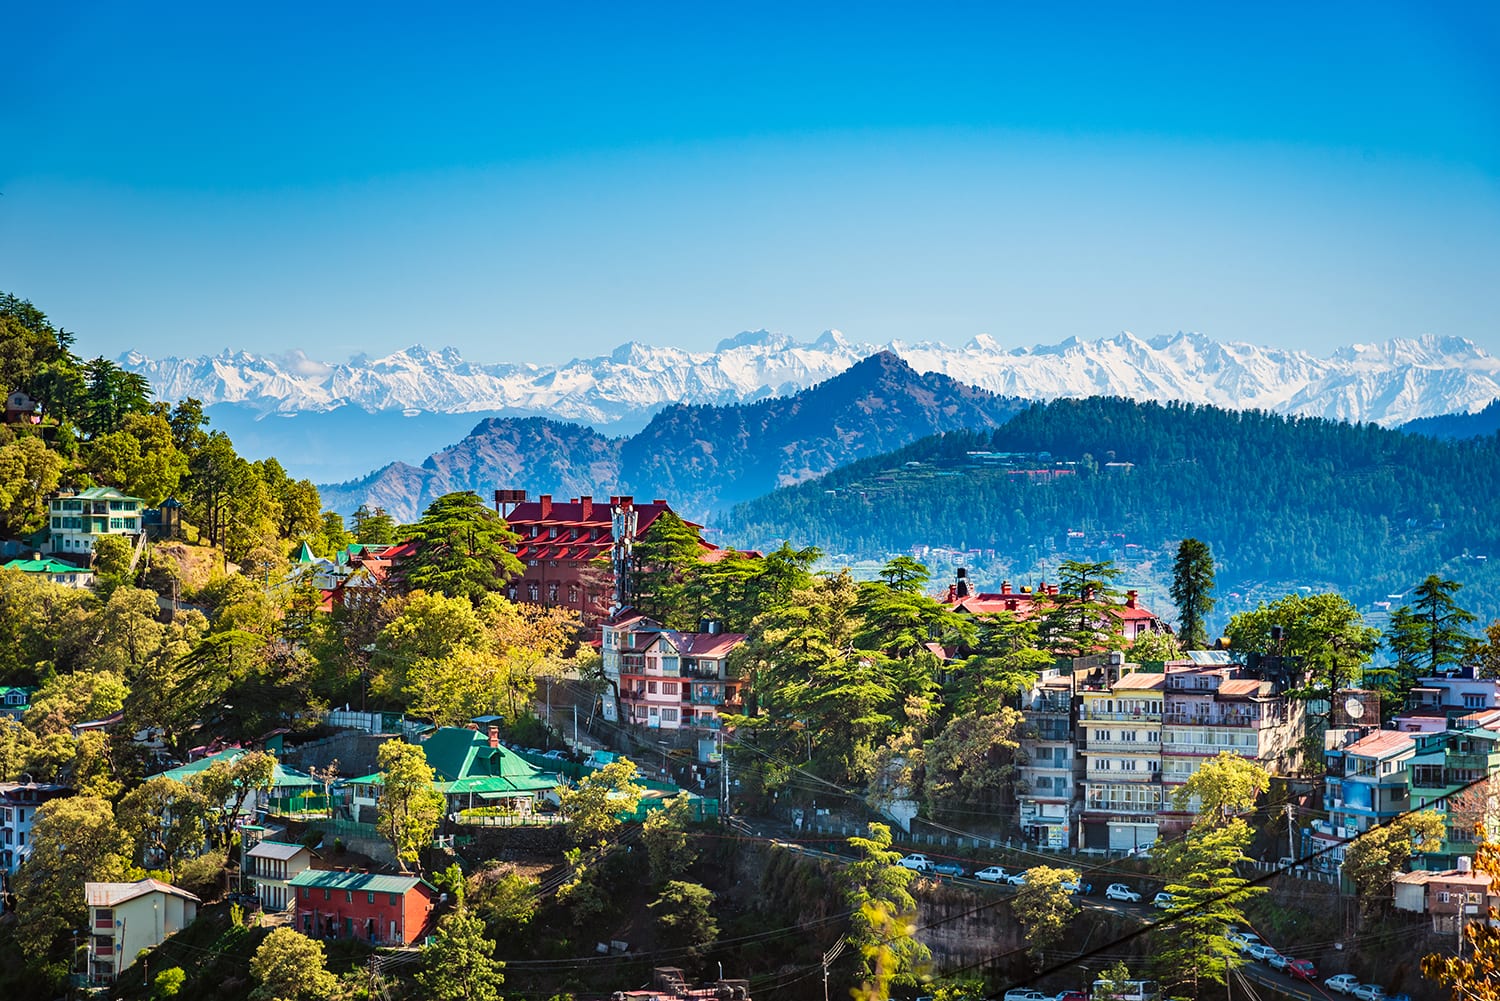 Die Hill Station Shimla in Himachal Pradesh am Fuße des indischen Himalaya